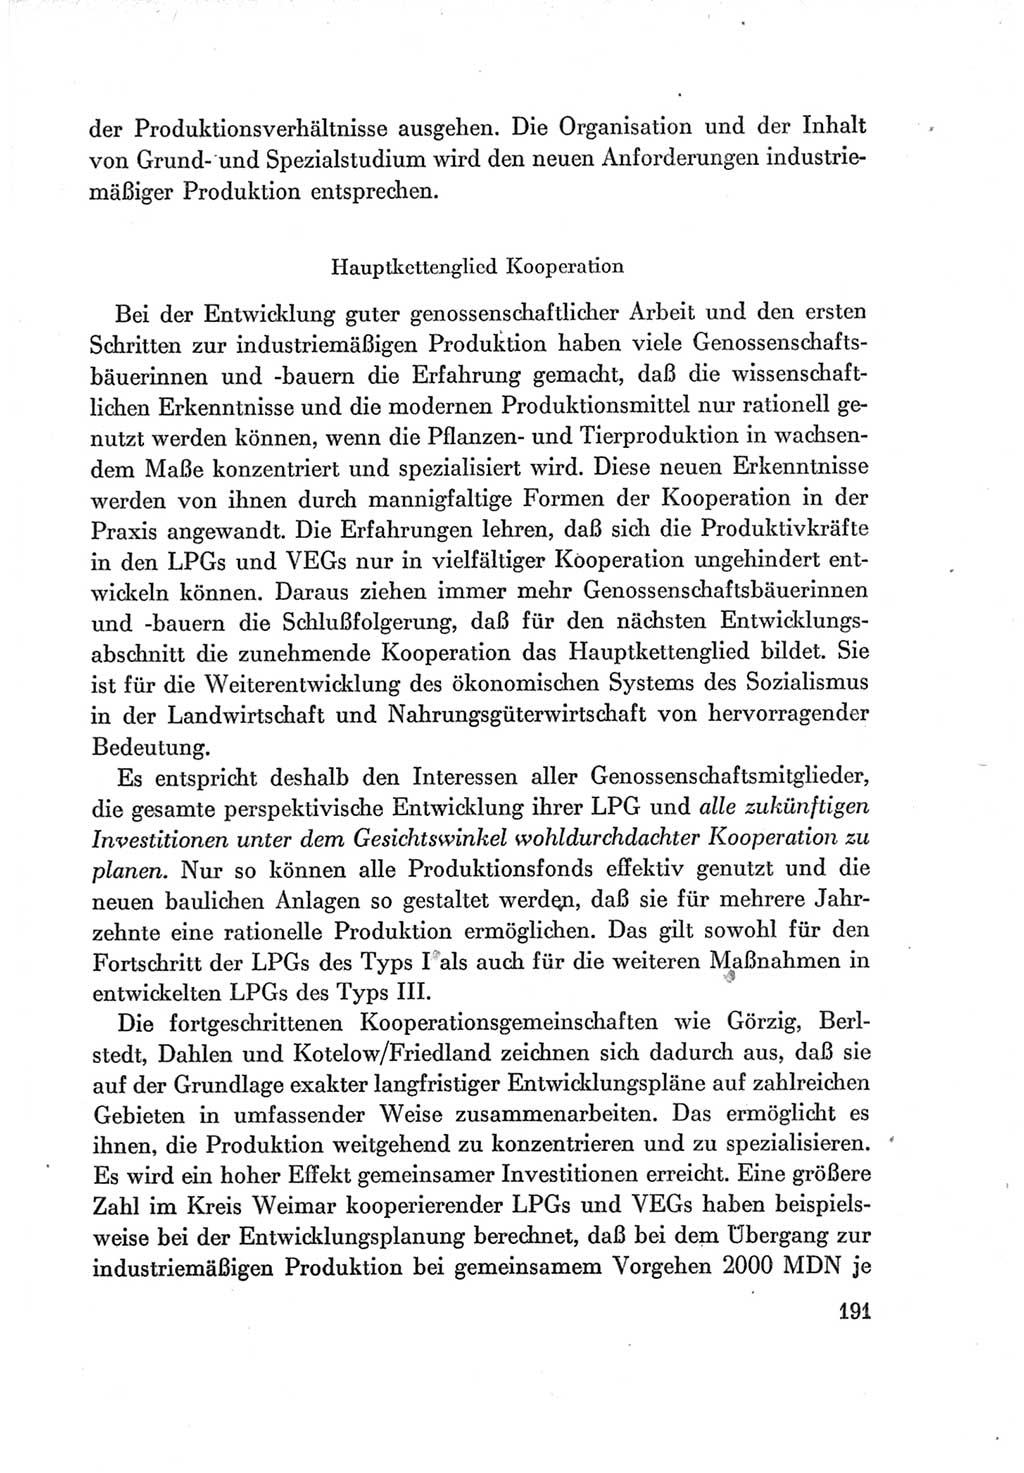 Protokoll der Verhandlungen des Ⅶ. Parteitages der Sozialistischen Einheitspartei Deutschlands (SED) [Deutsche Demokratische Republik (DDR)] 1967, Band Ⅰ, Seite 191 (Prot. Verh. Ⅶ. PT SED DDR 1967, Bd. Ⅰ, S. 191)